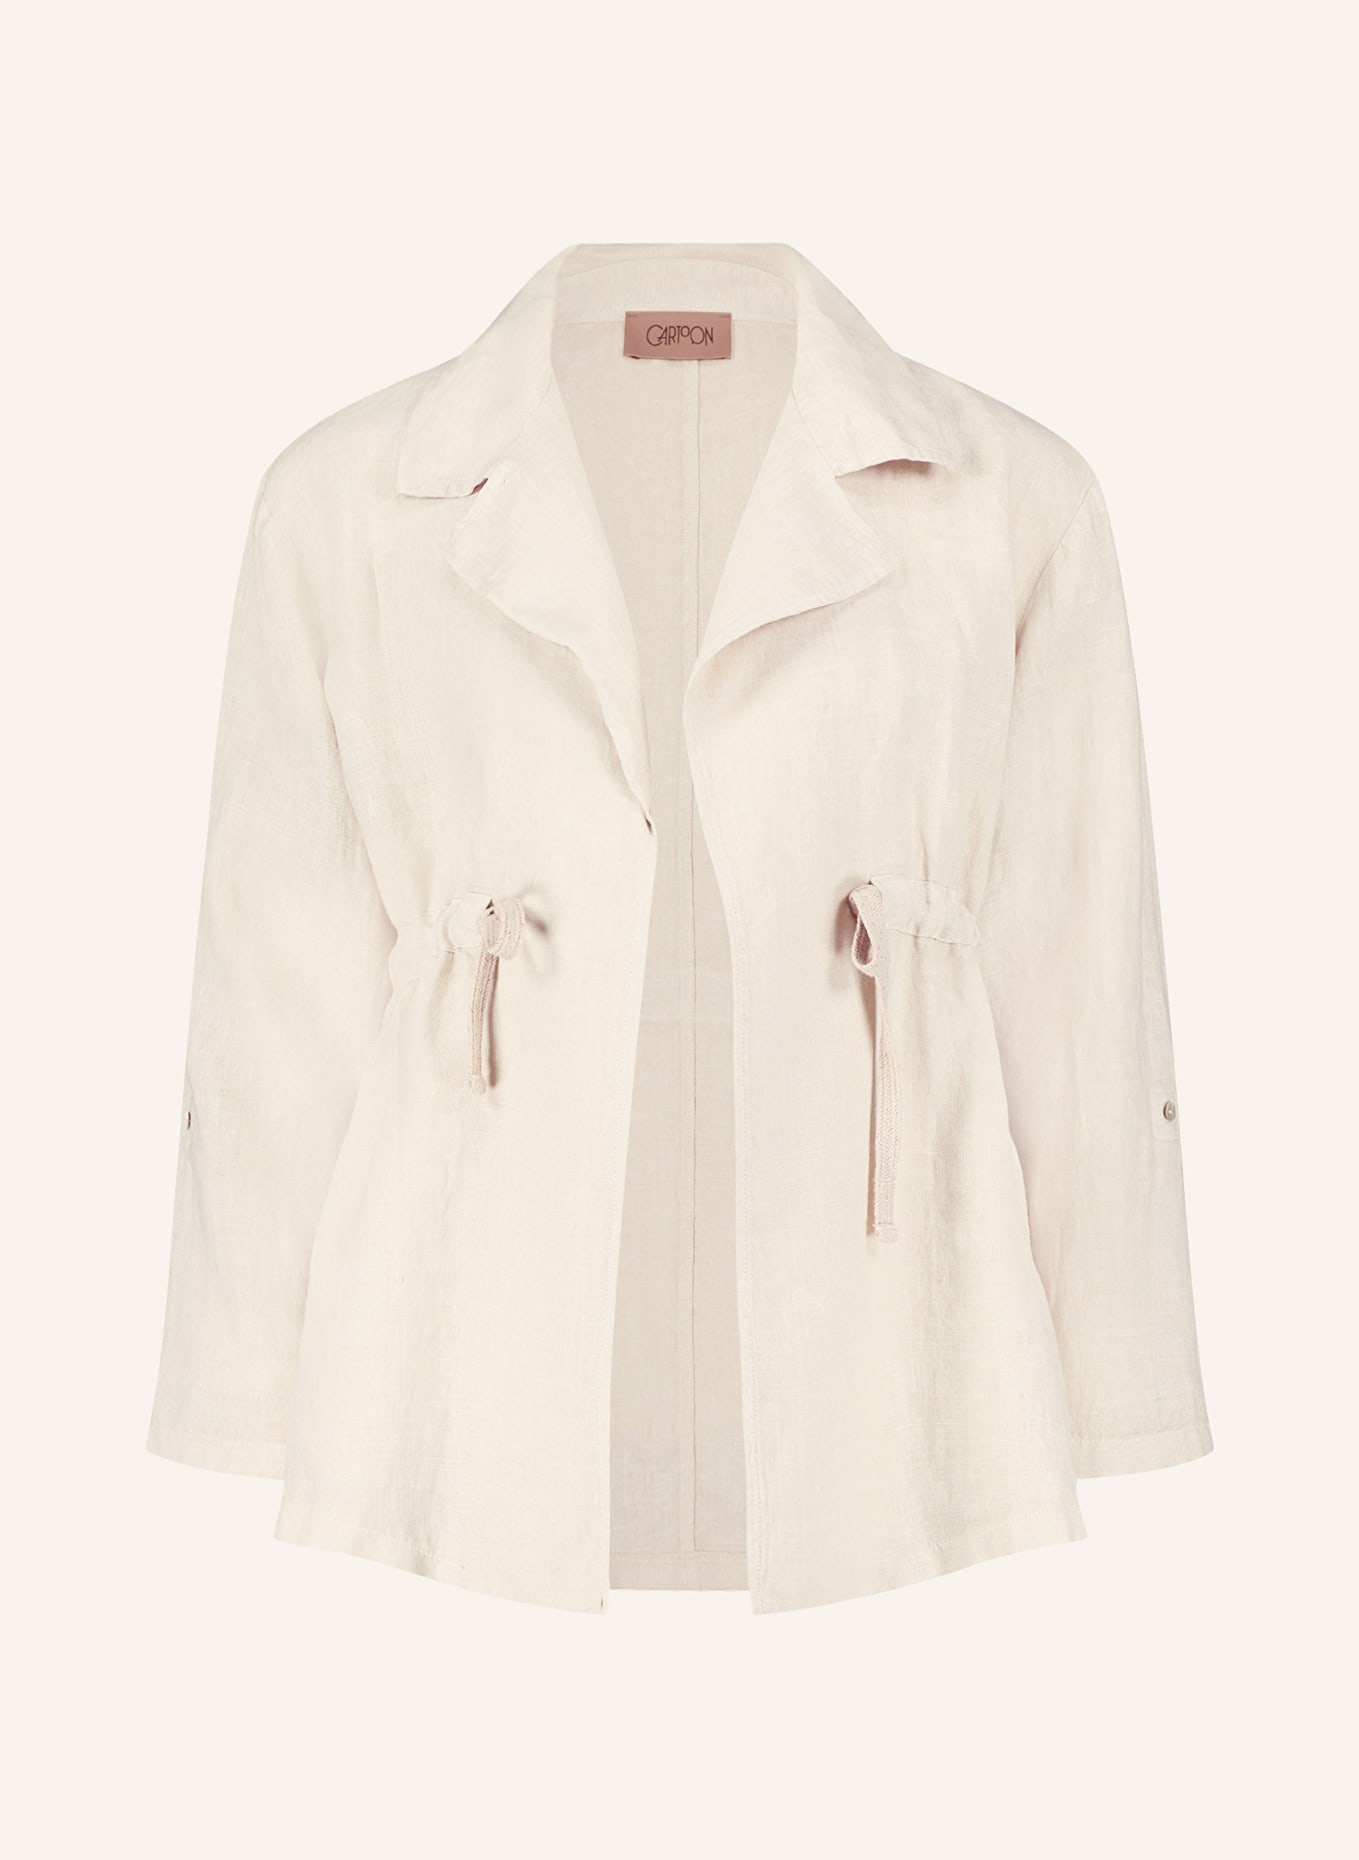 CARTOON Linen jacket, Color: CREAM (Image 1)